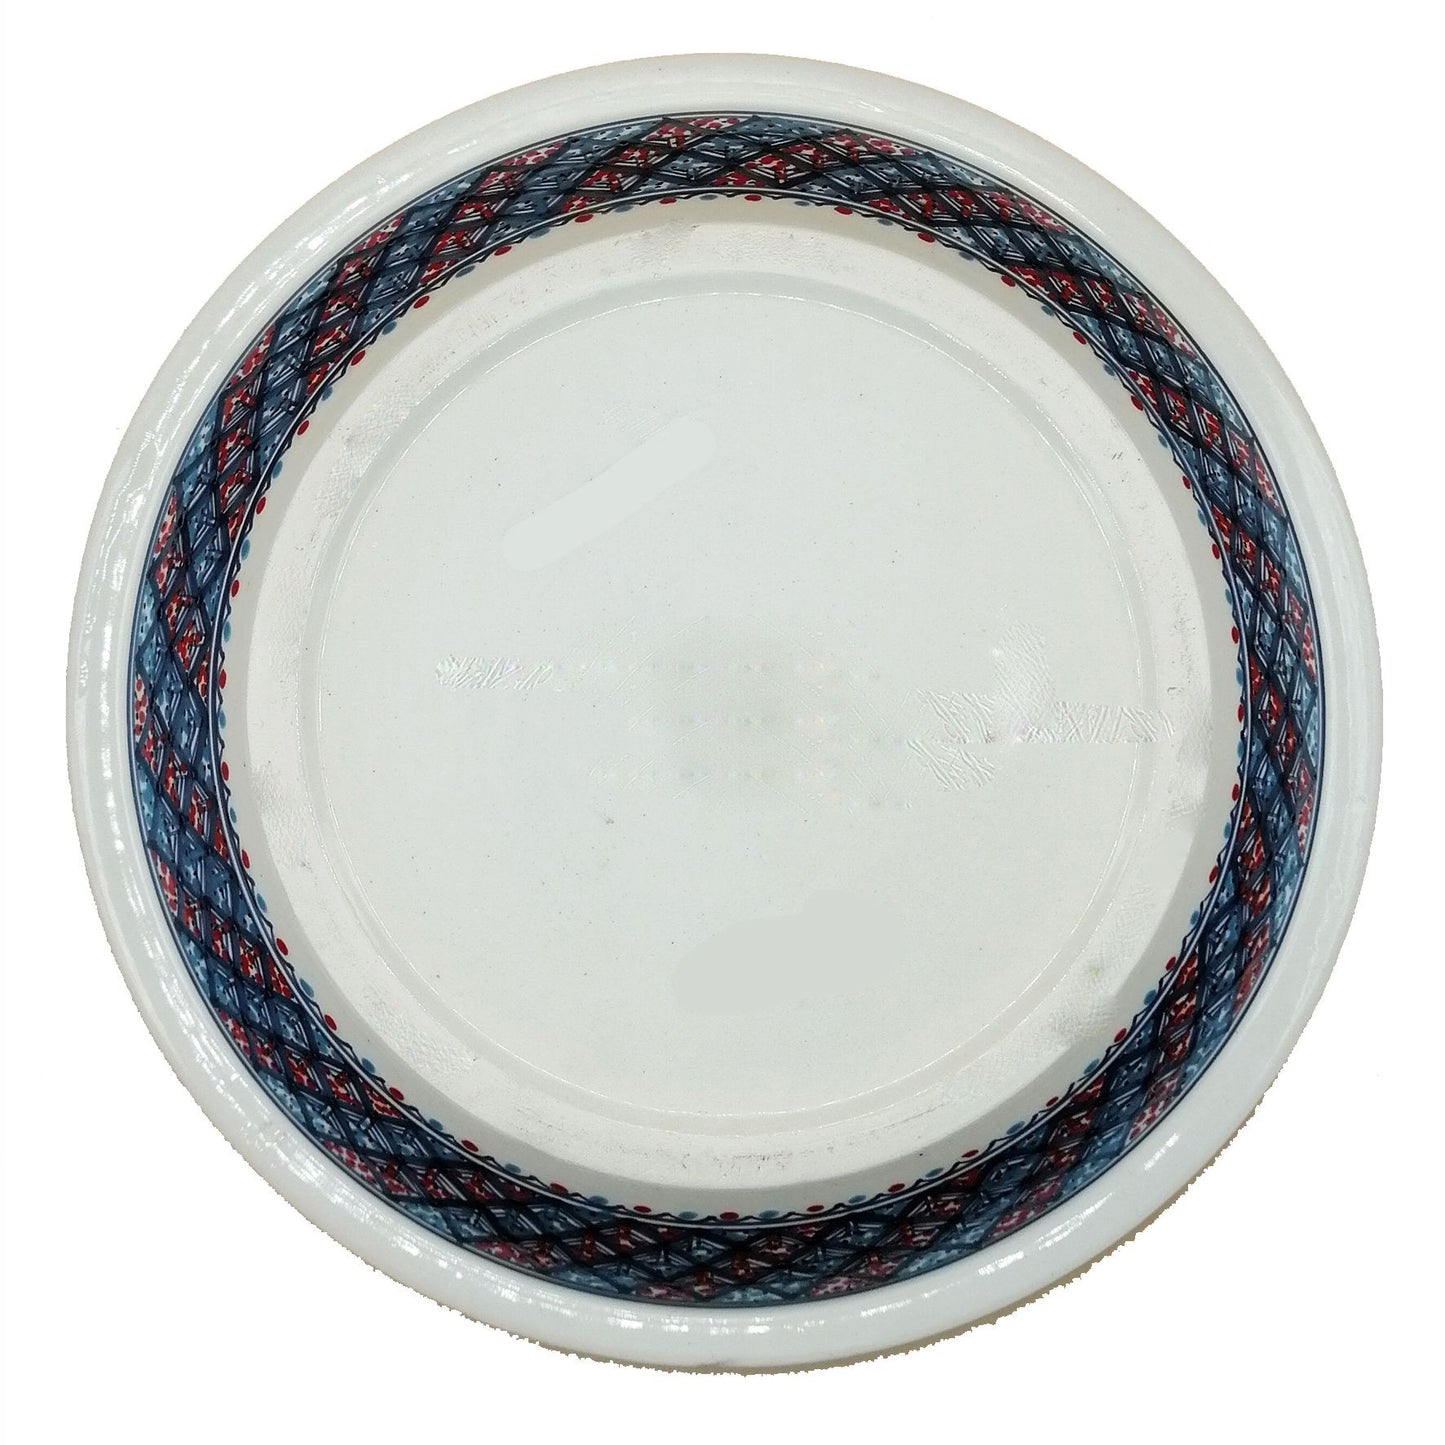 Arredo Etnico Tajine Decorativa Ceramica Marocchina Tunisina 32cm 0311200904